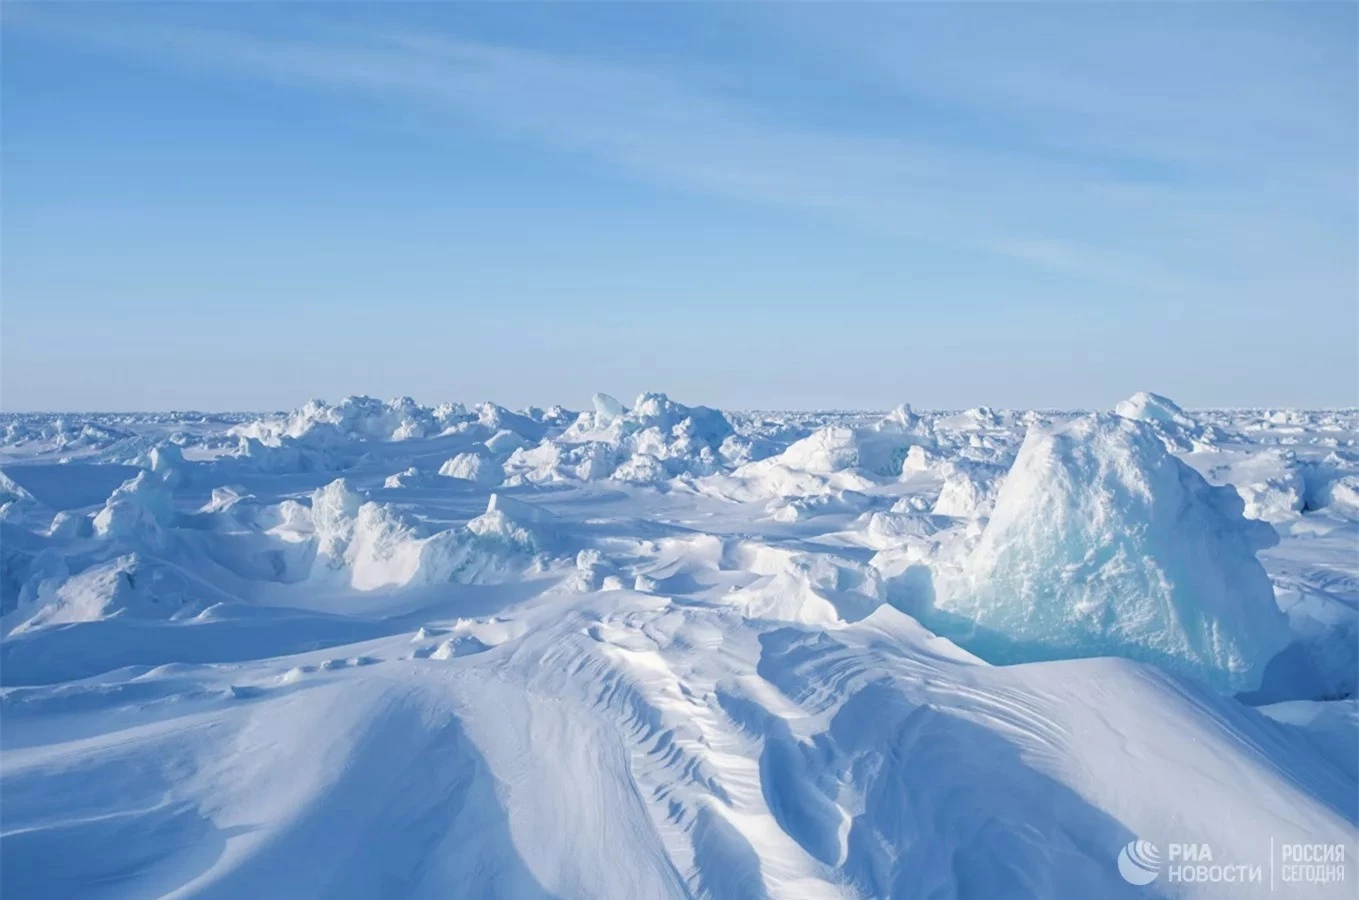 Báo Pháp ‘kinh ngạc’ trước sức mạnh của Nga ở Bắc Cực